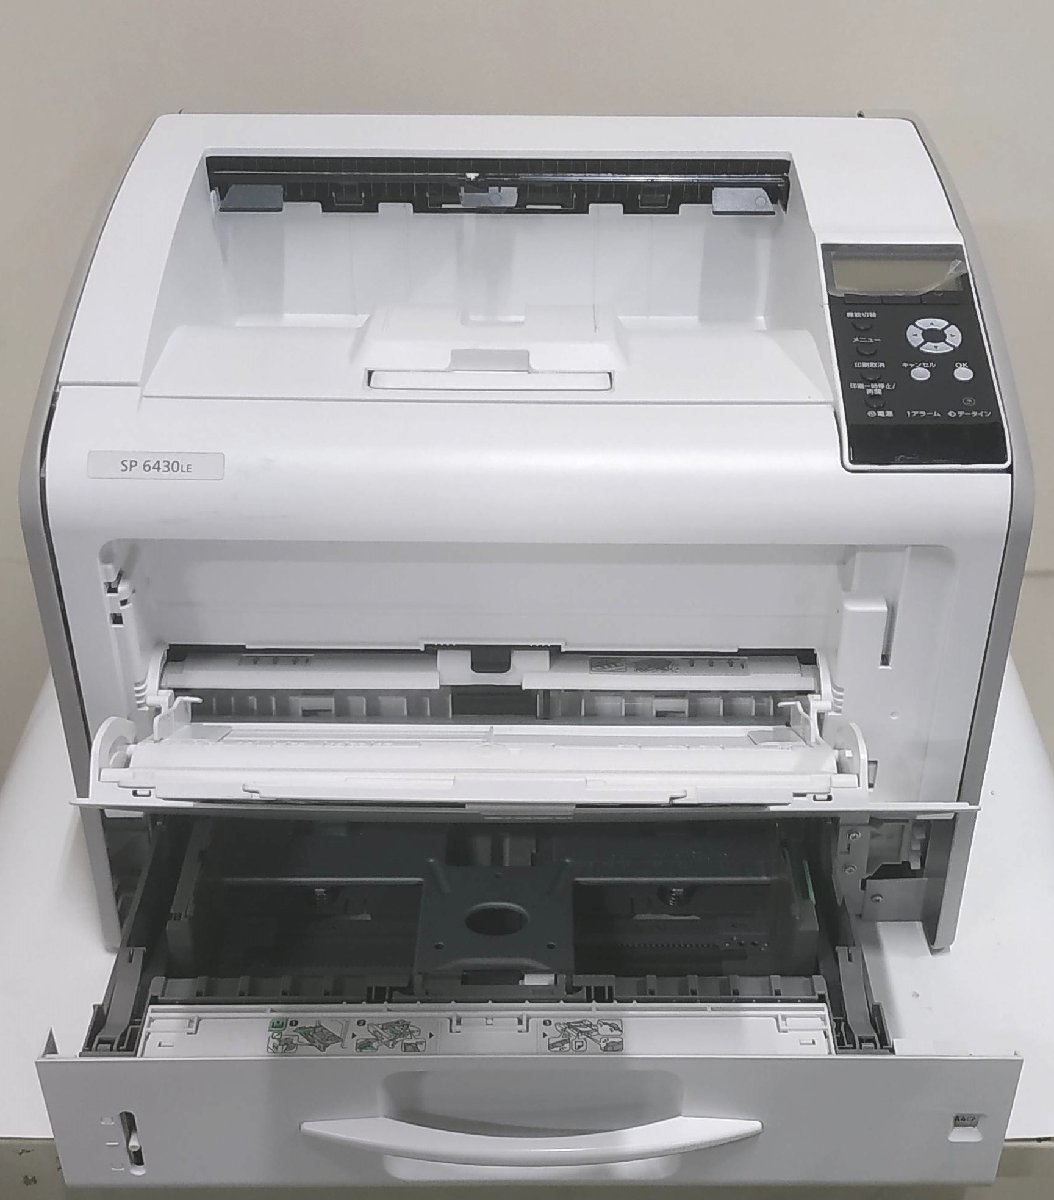 [ Saitama departure ][RICOH]A3 монохромный принтер SP6430LE * счетчик 1878 листов * рабочее состояние подтверждено ** печать с дефектом * (11-2756)